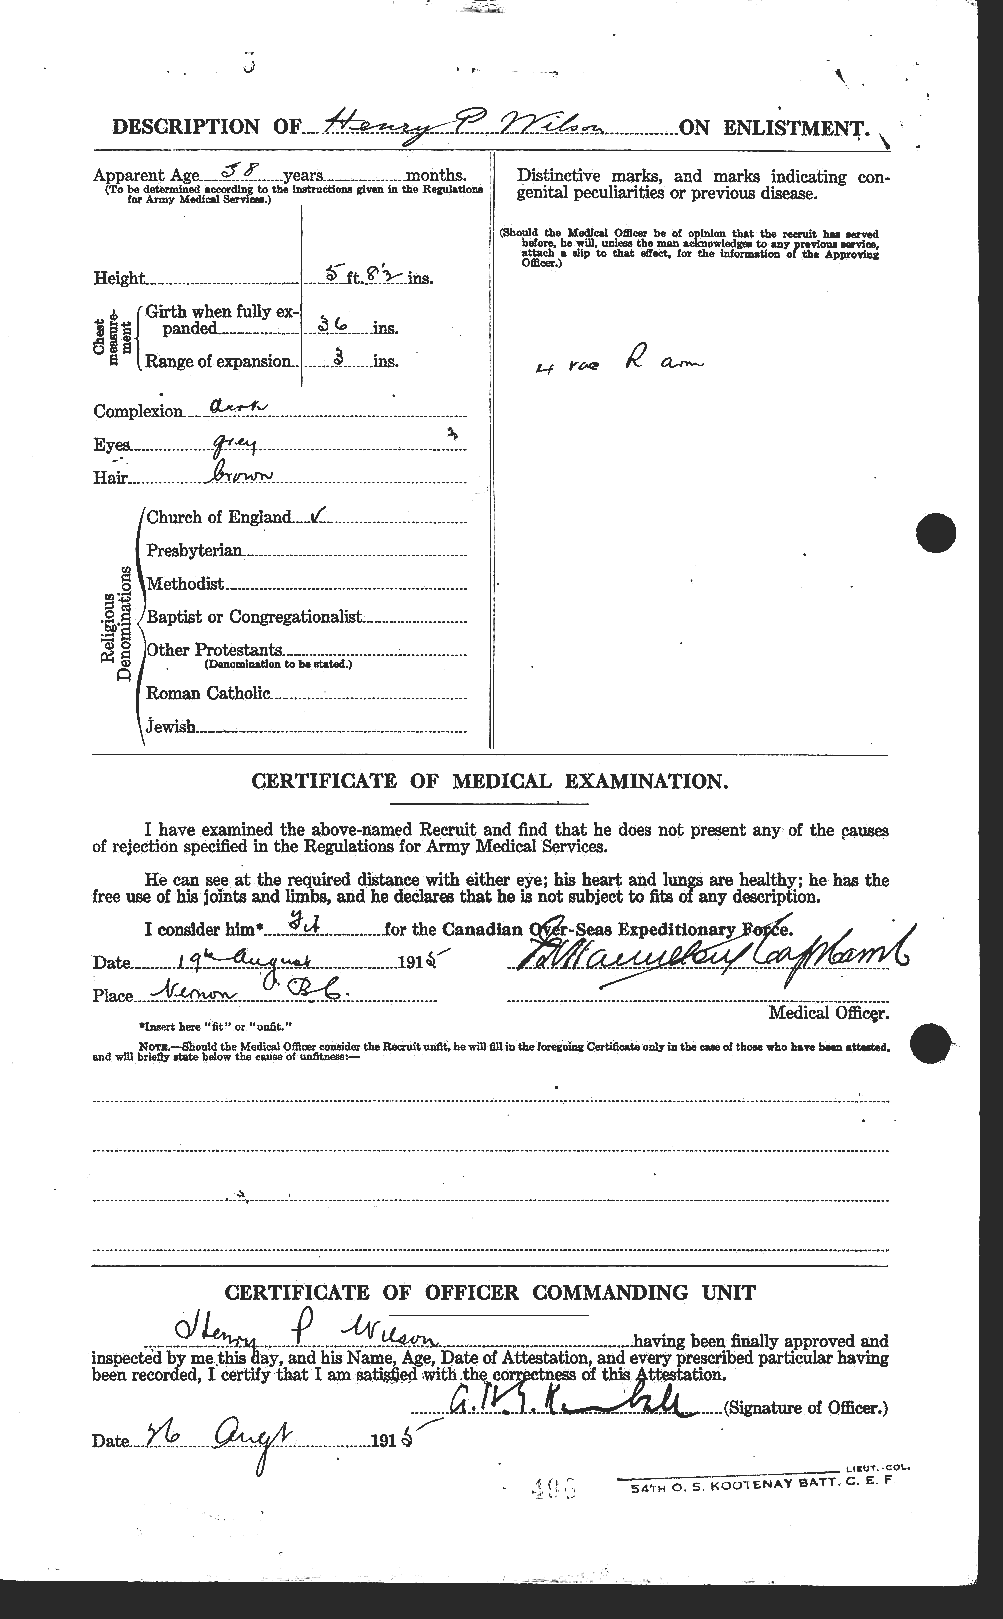 Dossiers du Personnel de la Première Guerre mondiale - CEC 679539b